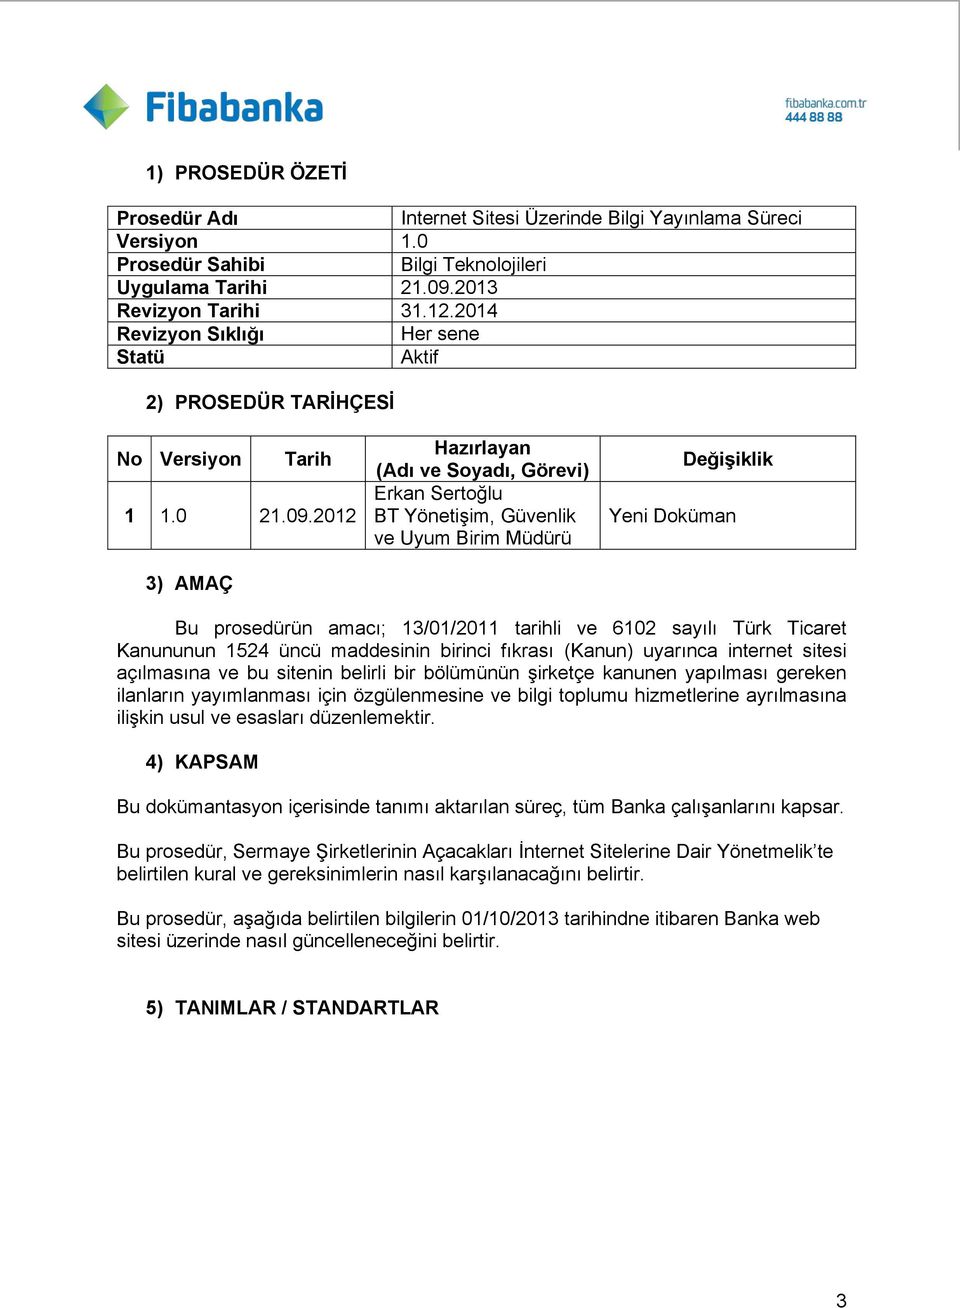 2012 3) AMAÇ Hazırlayan (Adı ve Soyadı, Görevi) Erkan Sertoğlu BT Yönetişim, Güvenlik ve Uyum Birim Müdürü DeğiĢiklik Yeni Doküman Bu prosedürün amacı; 13/01/2011 tarihli ve 6102 sayılı Türk Ticaret